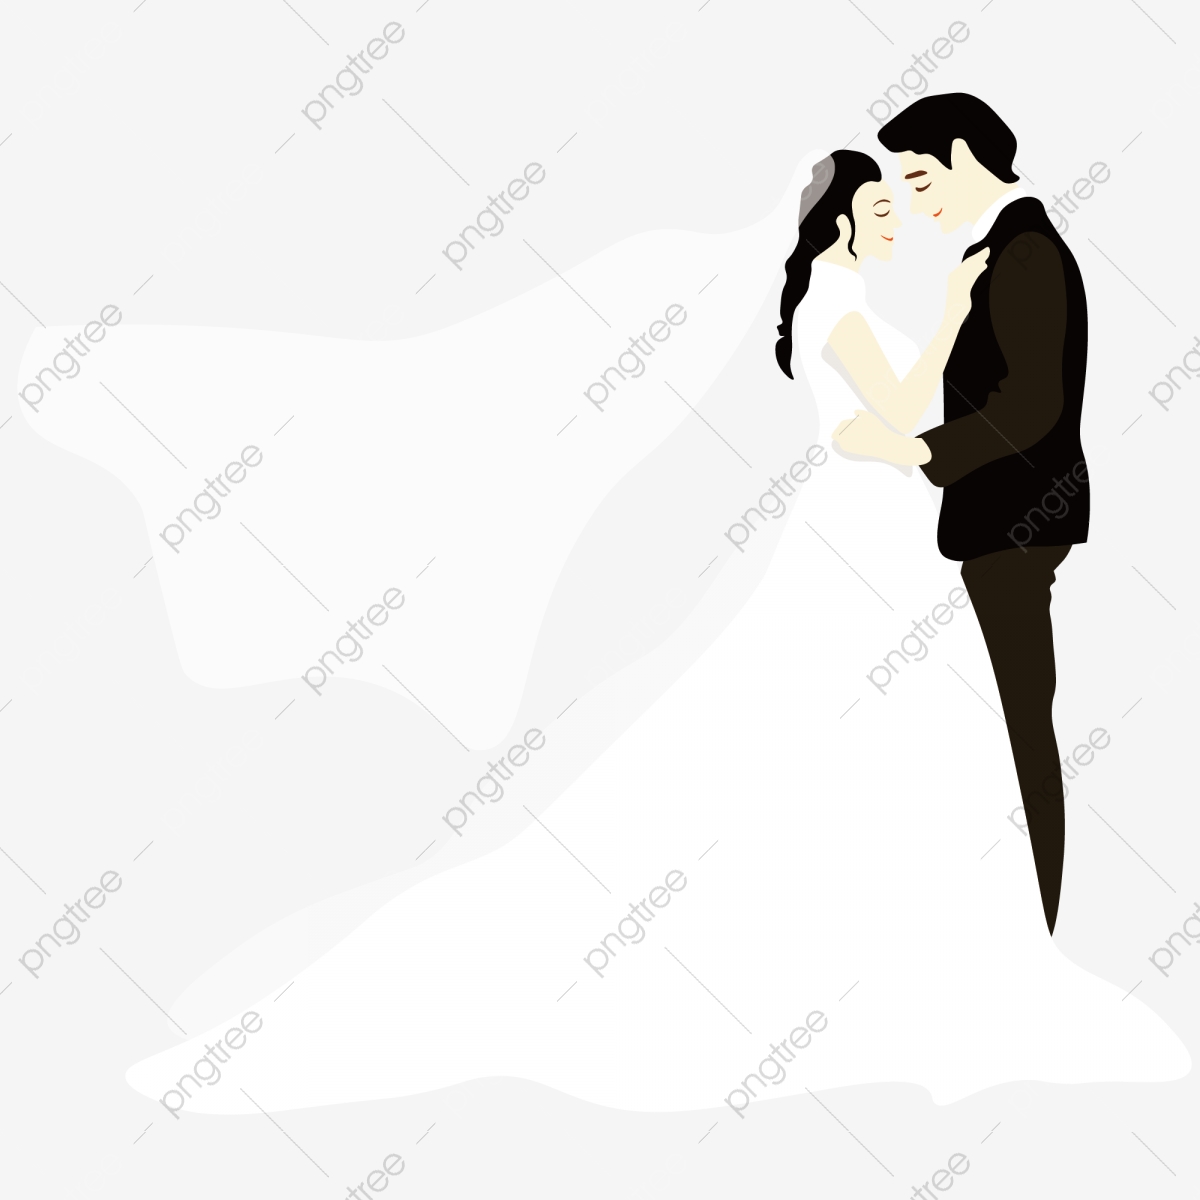 Groom clipart minimalist. Cartoon bride design bridegroom